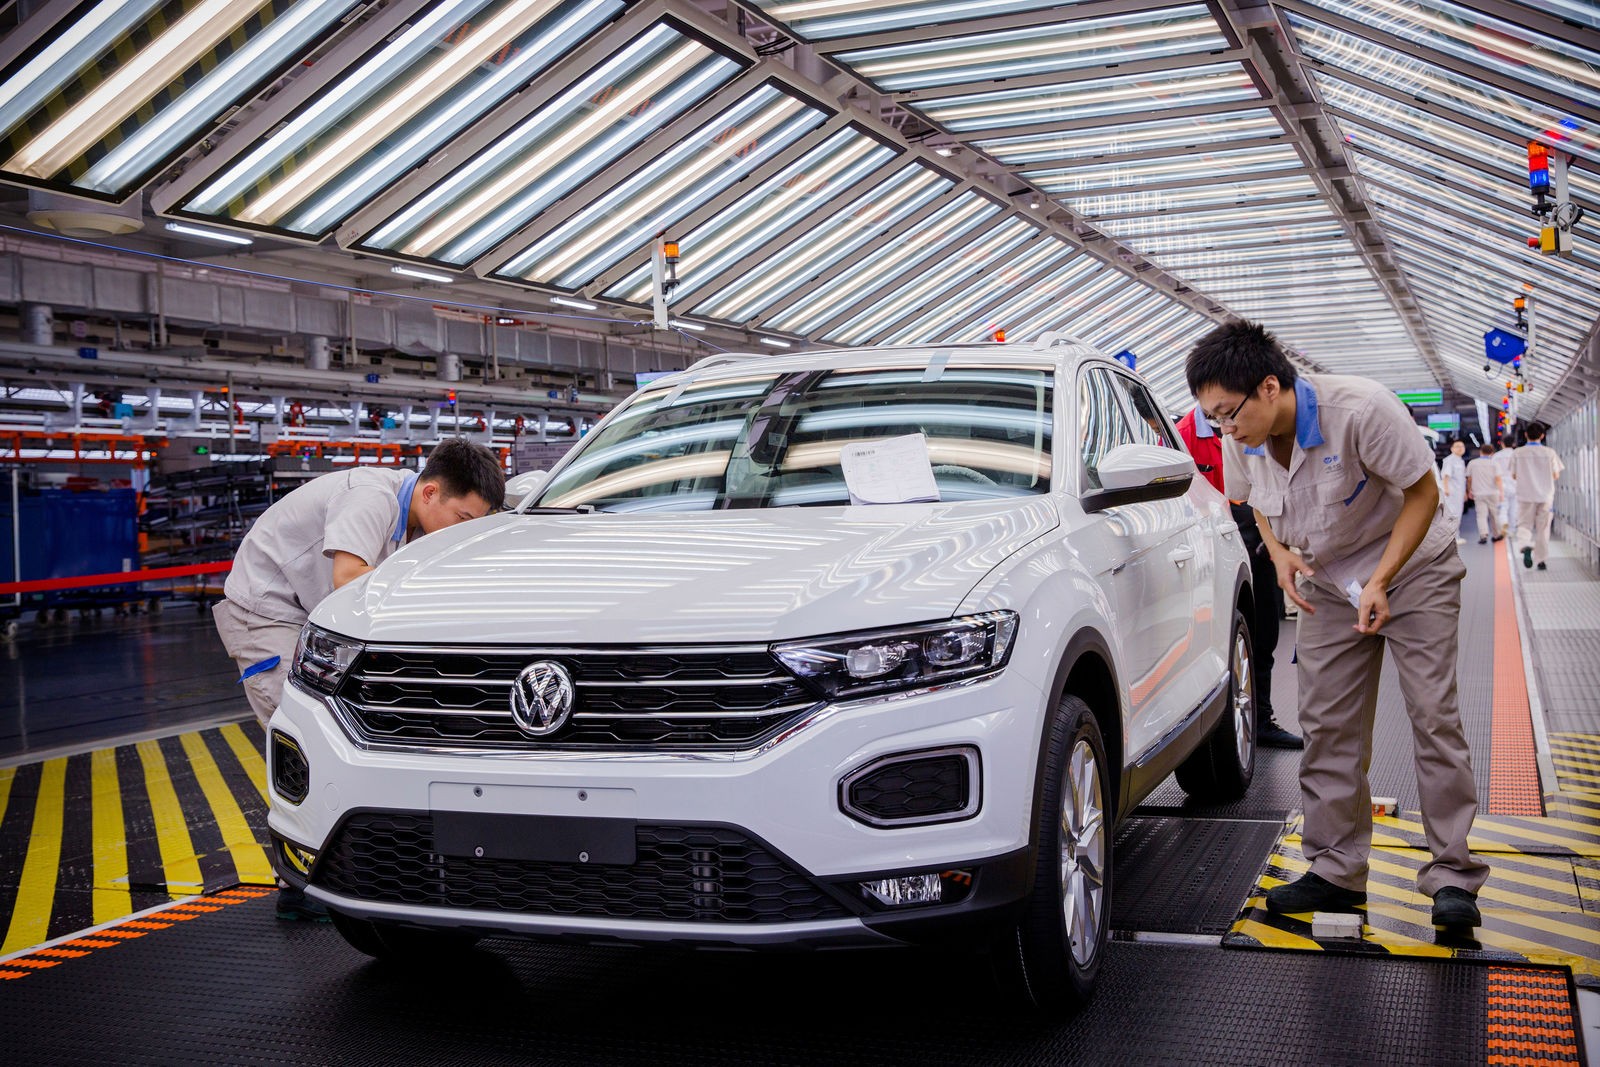 
VW thất thế tại thị trường Trung Quốc dù từng có thời kỳ huy hoàng tại đây
